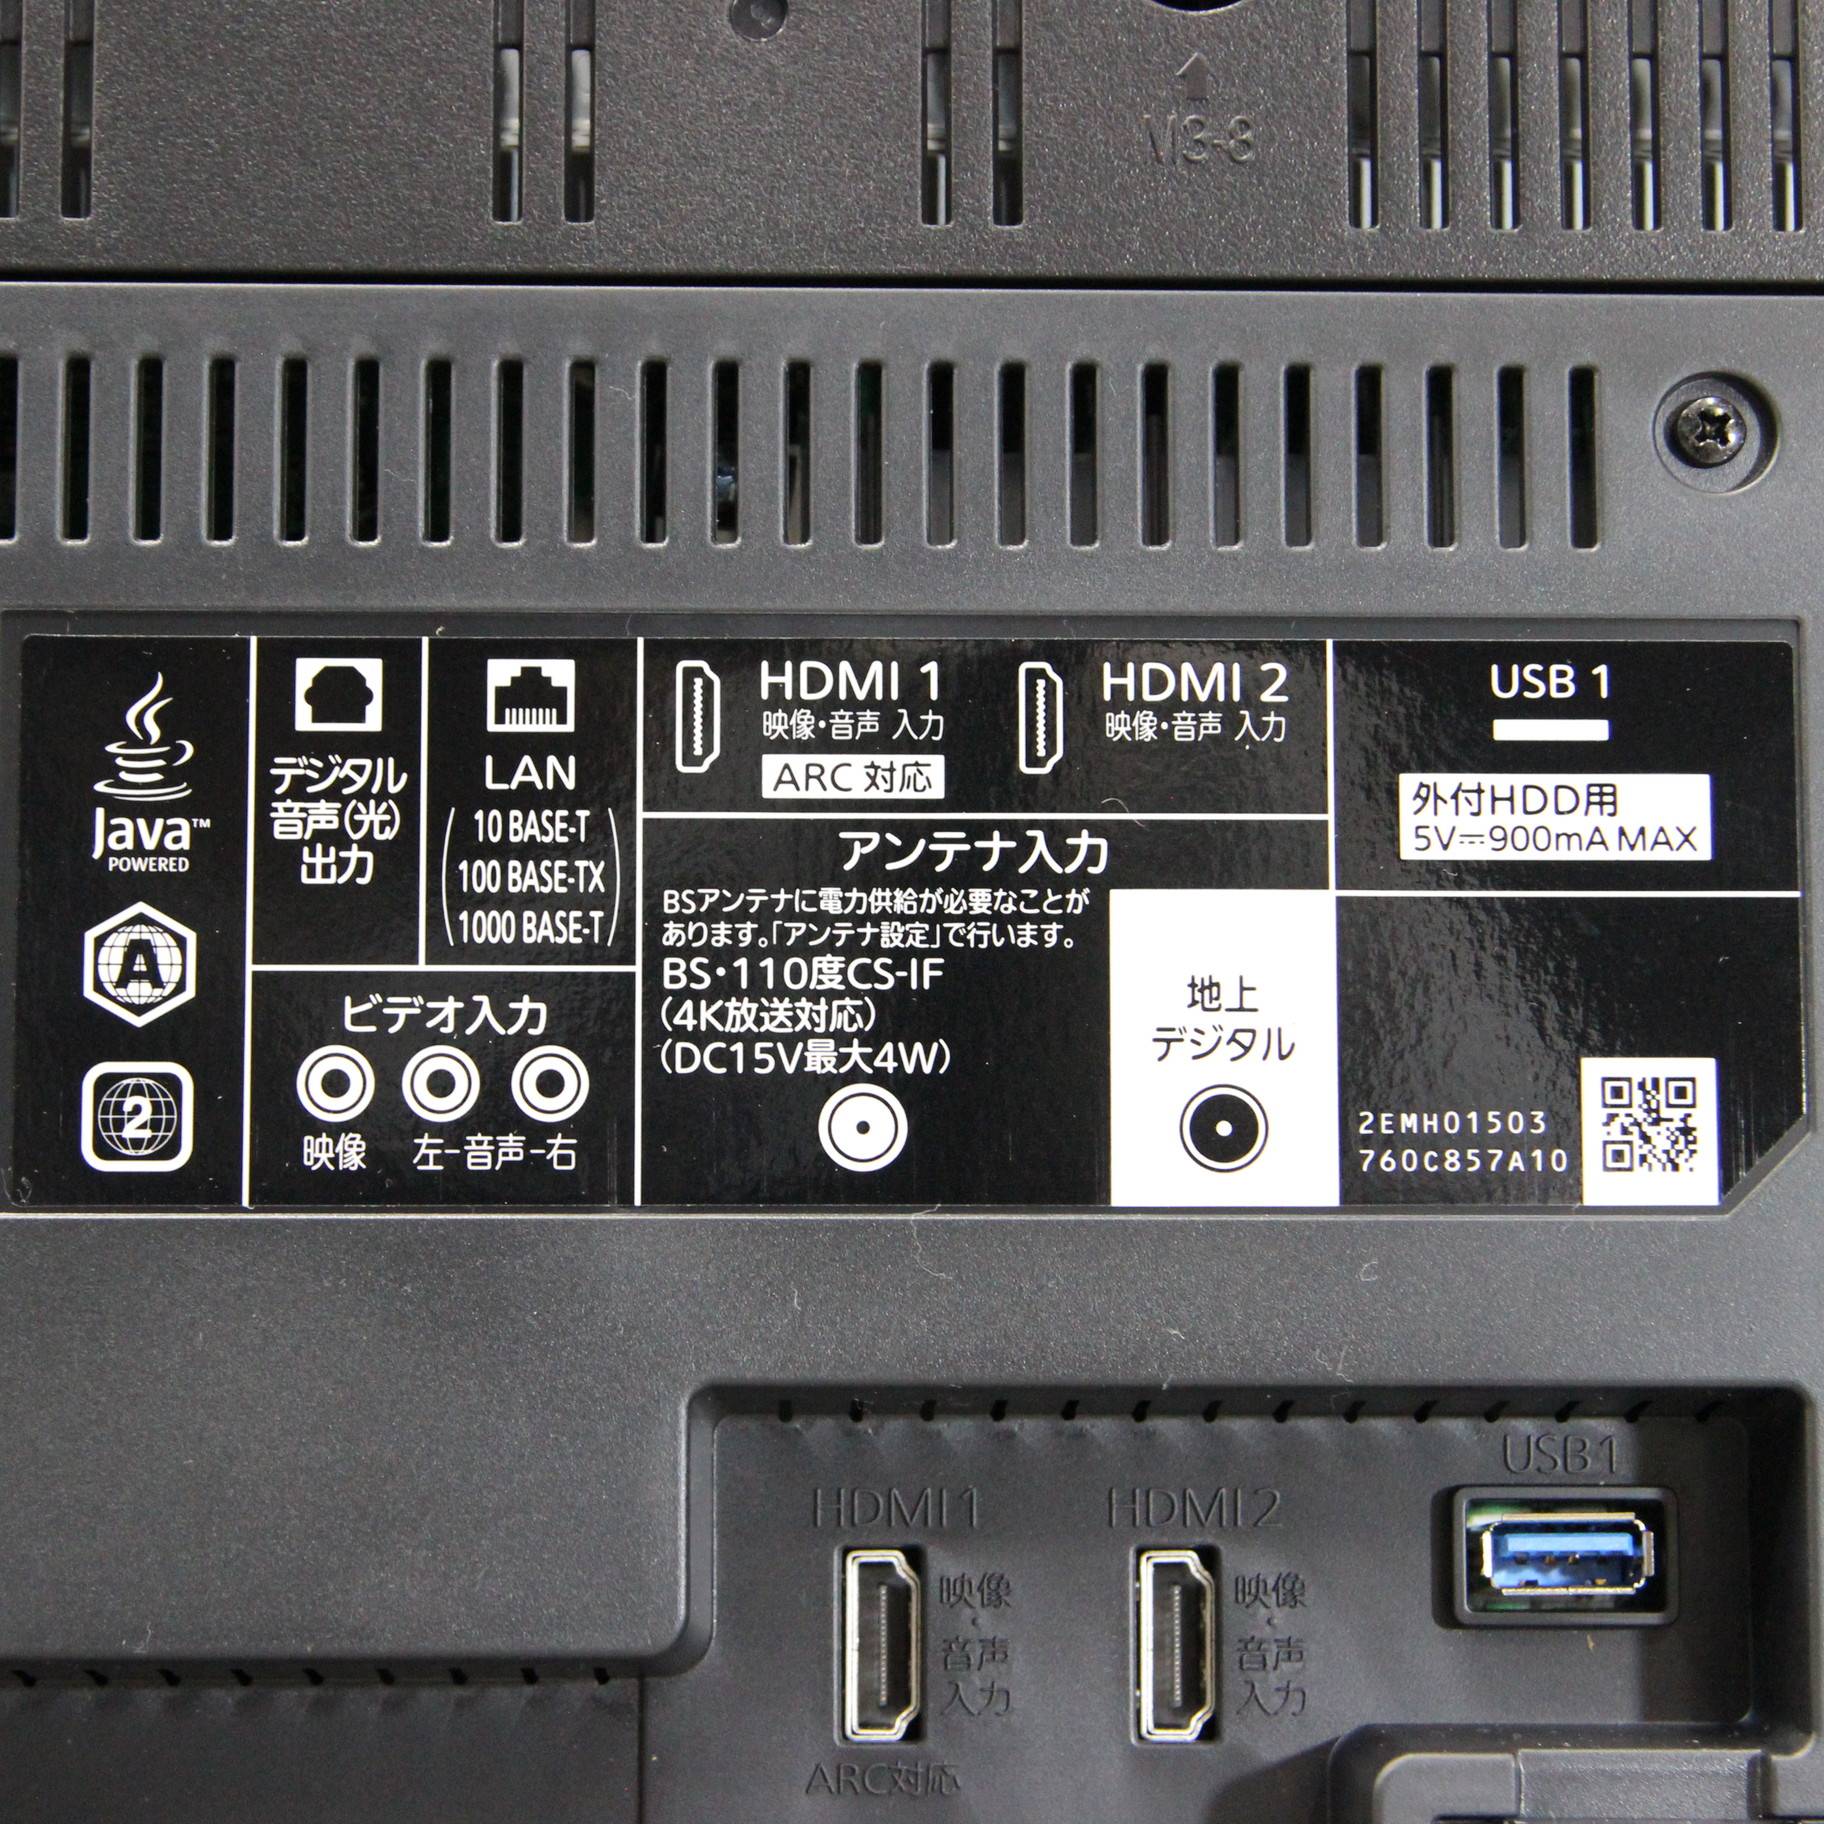 三菱 50V型 4Kチューナー内蔵液晶テレビ LCD-A50RA2000